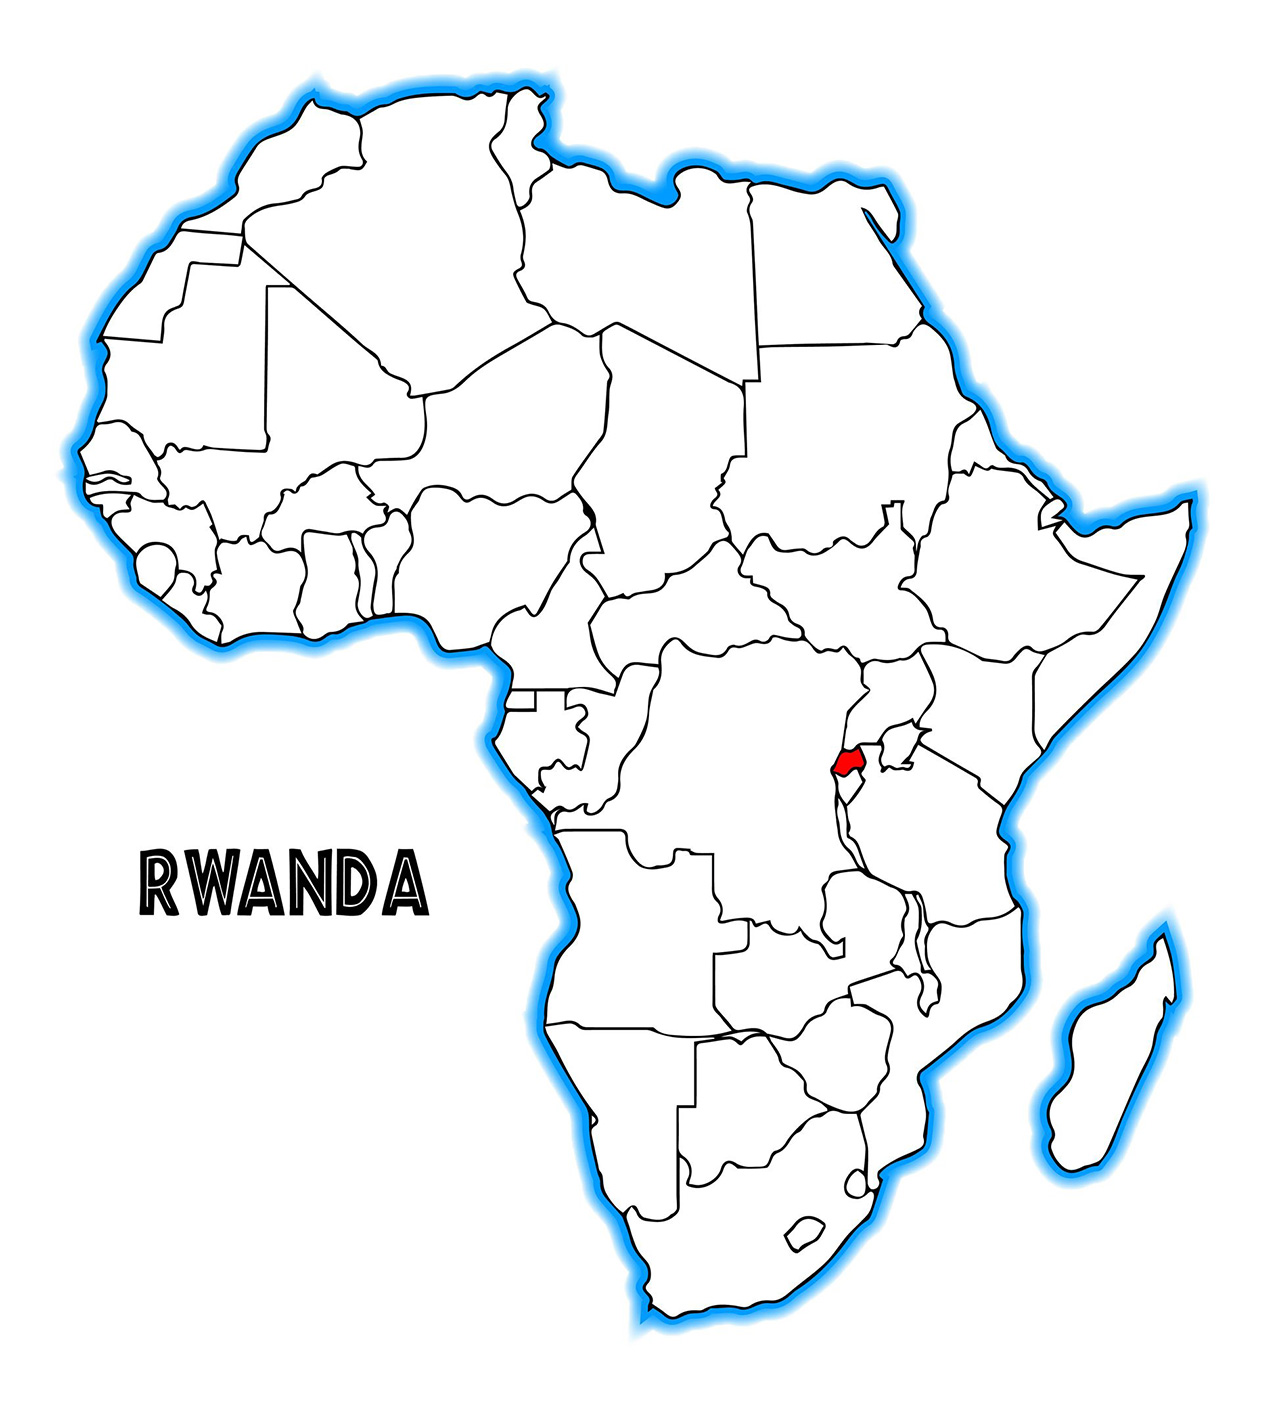 アフリカの地図。赤く塗られているのがルワンダ